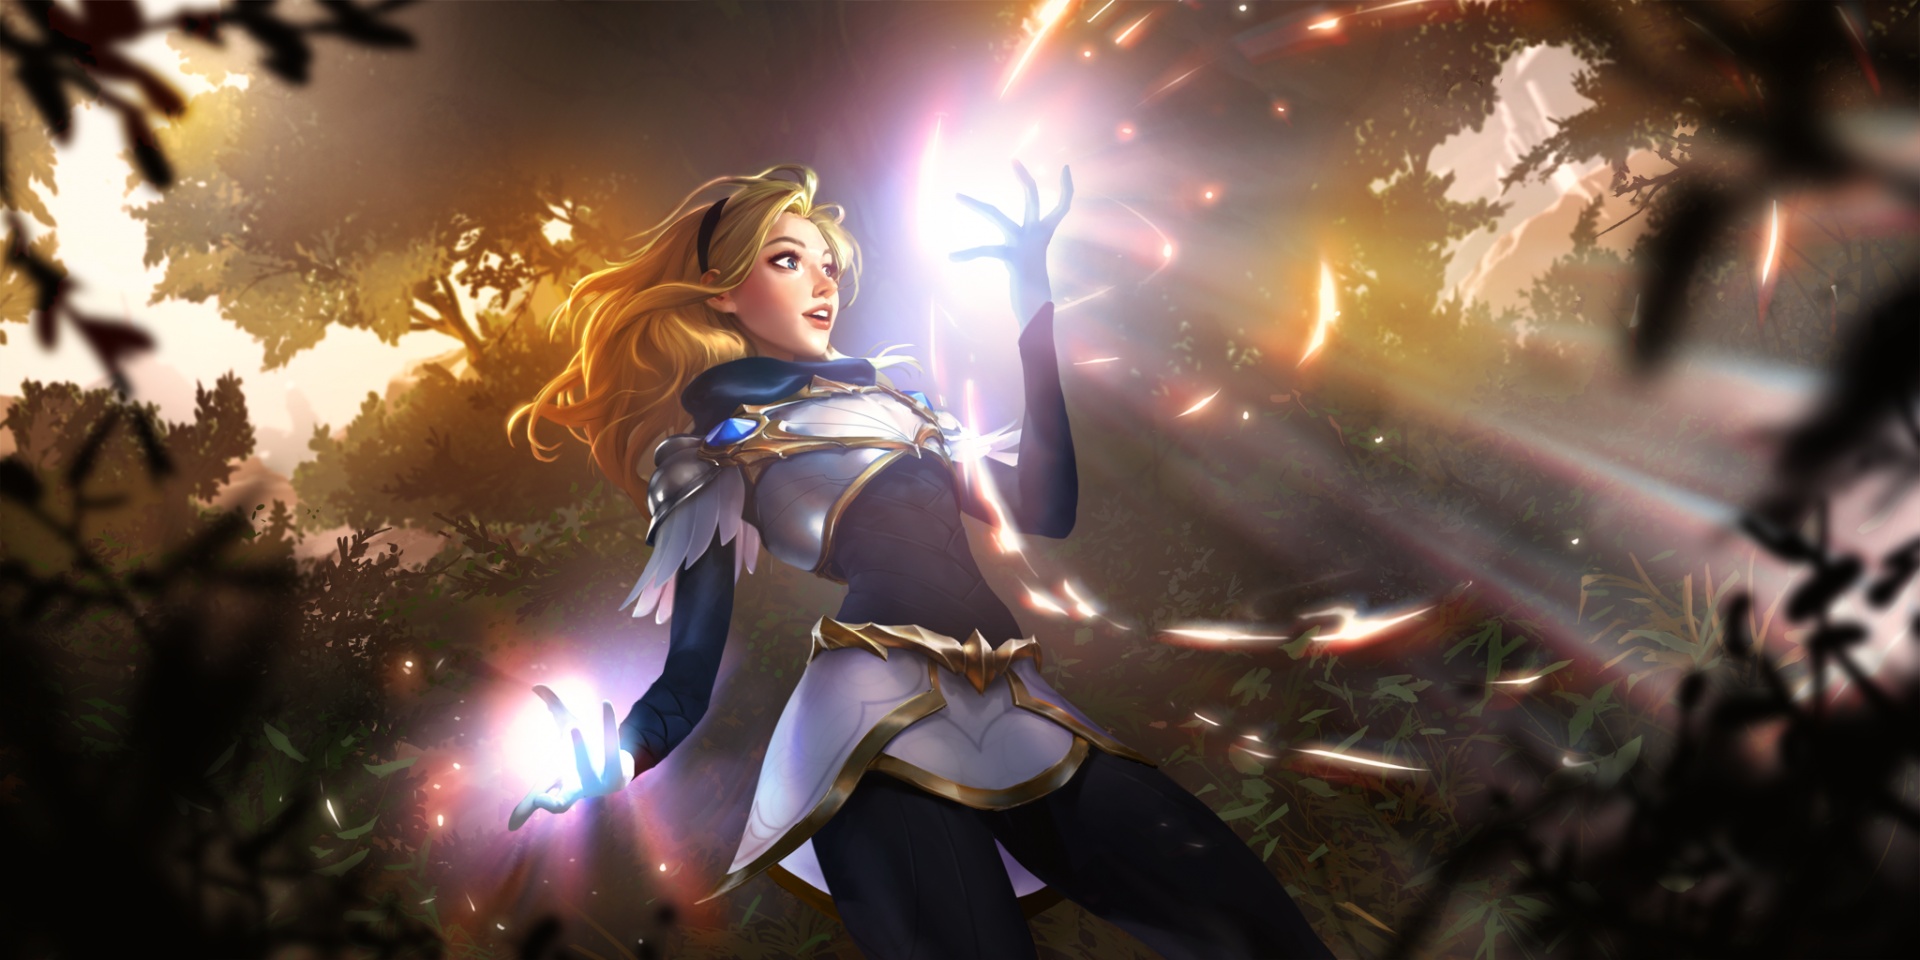 Legends of Runeterra, карточная игра по вселенной League of Legends, выйдет в 2020 году